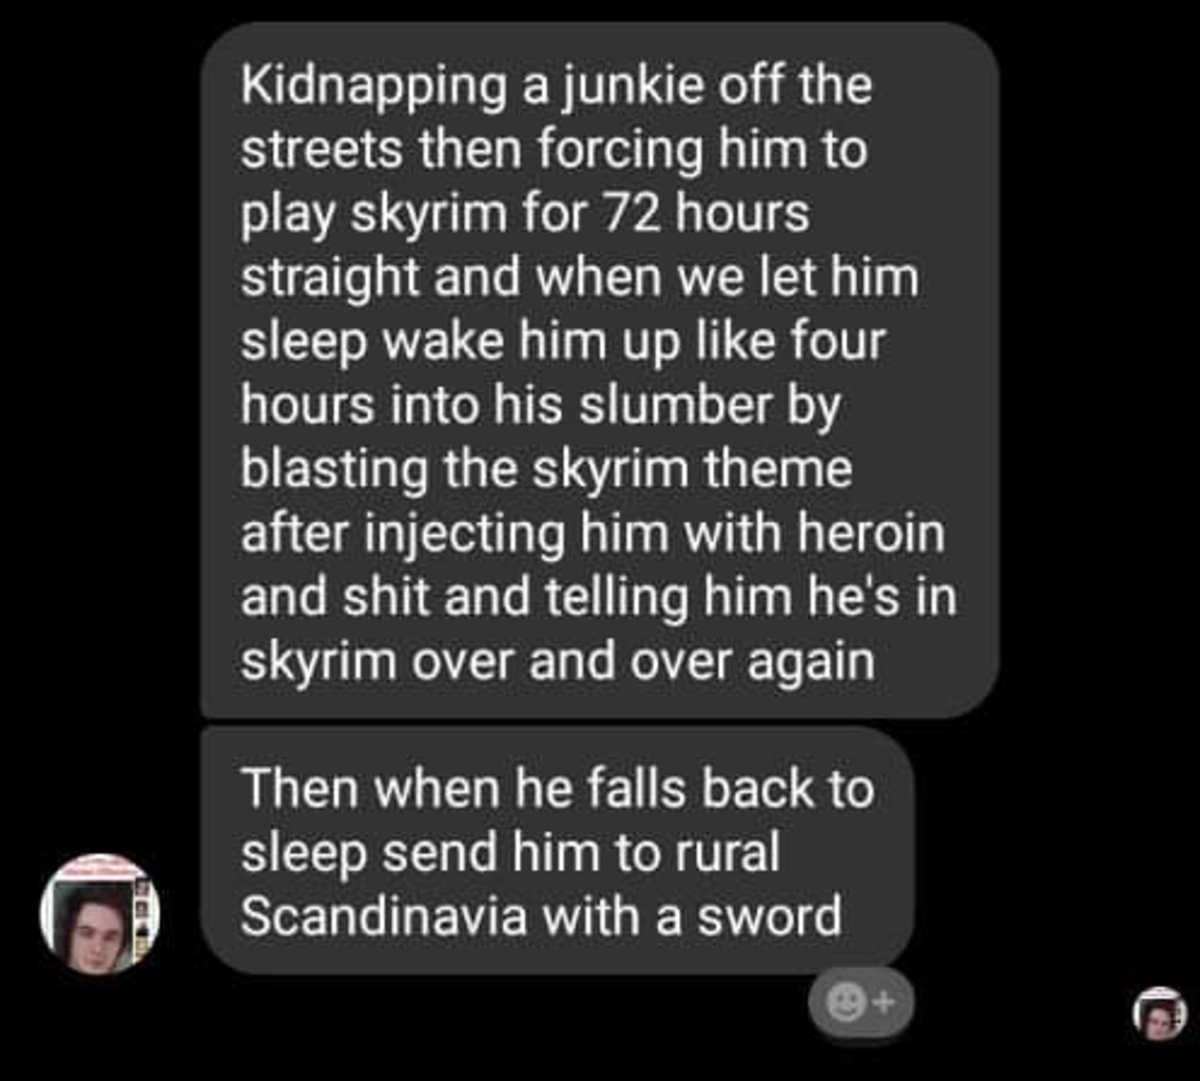 Skyrim belongs to the junkies